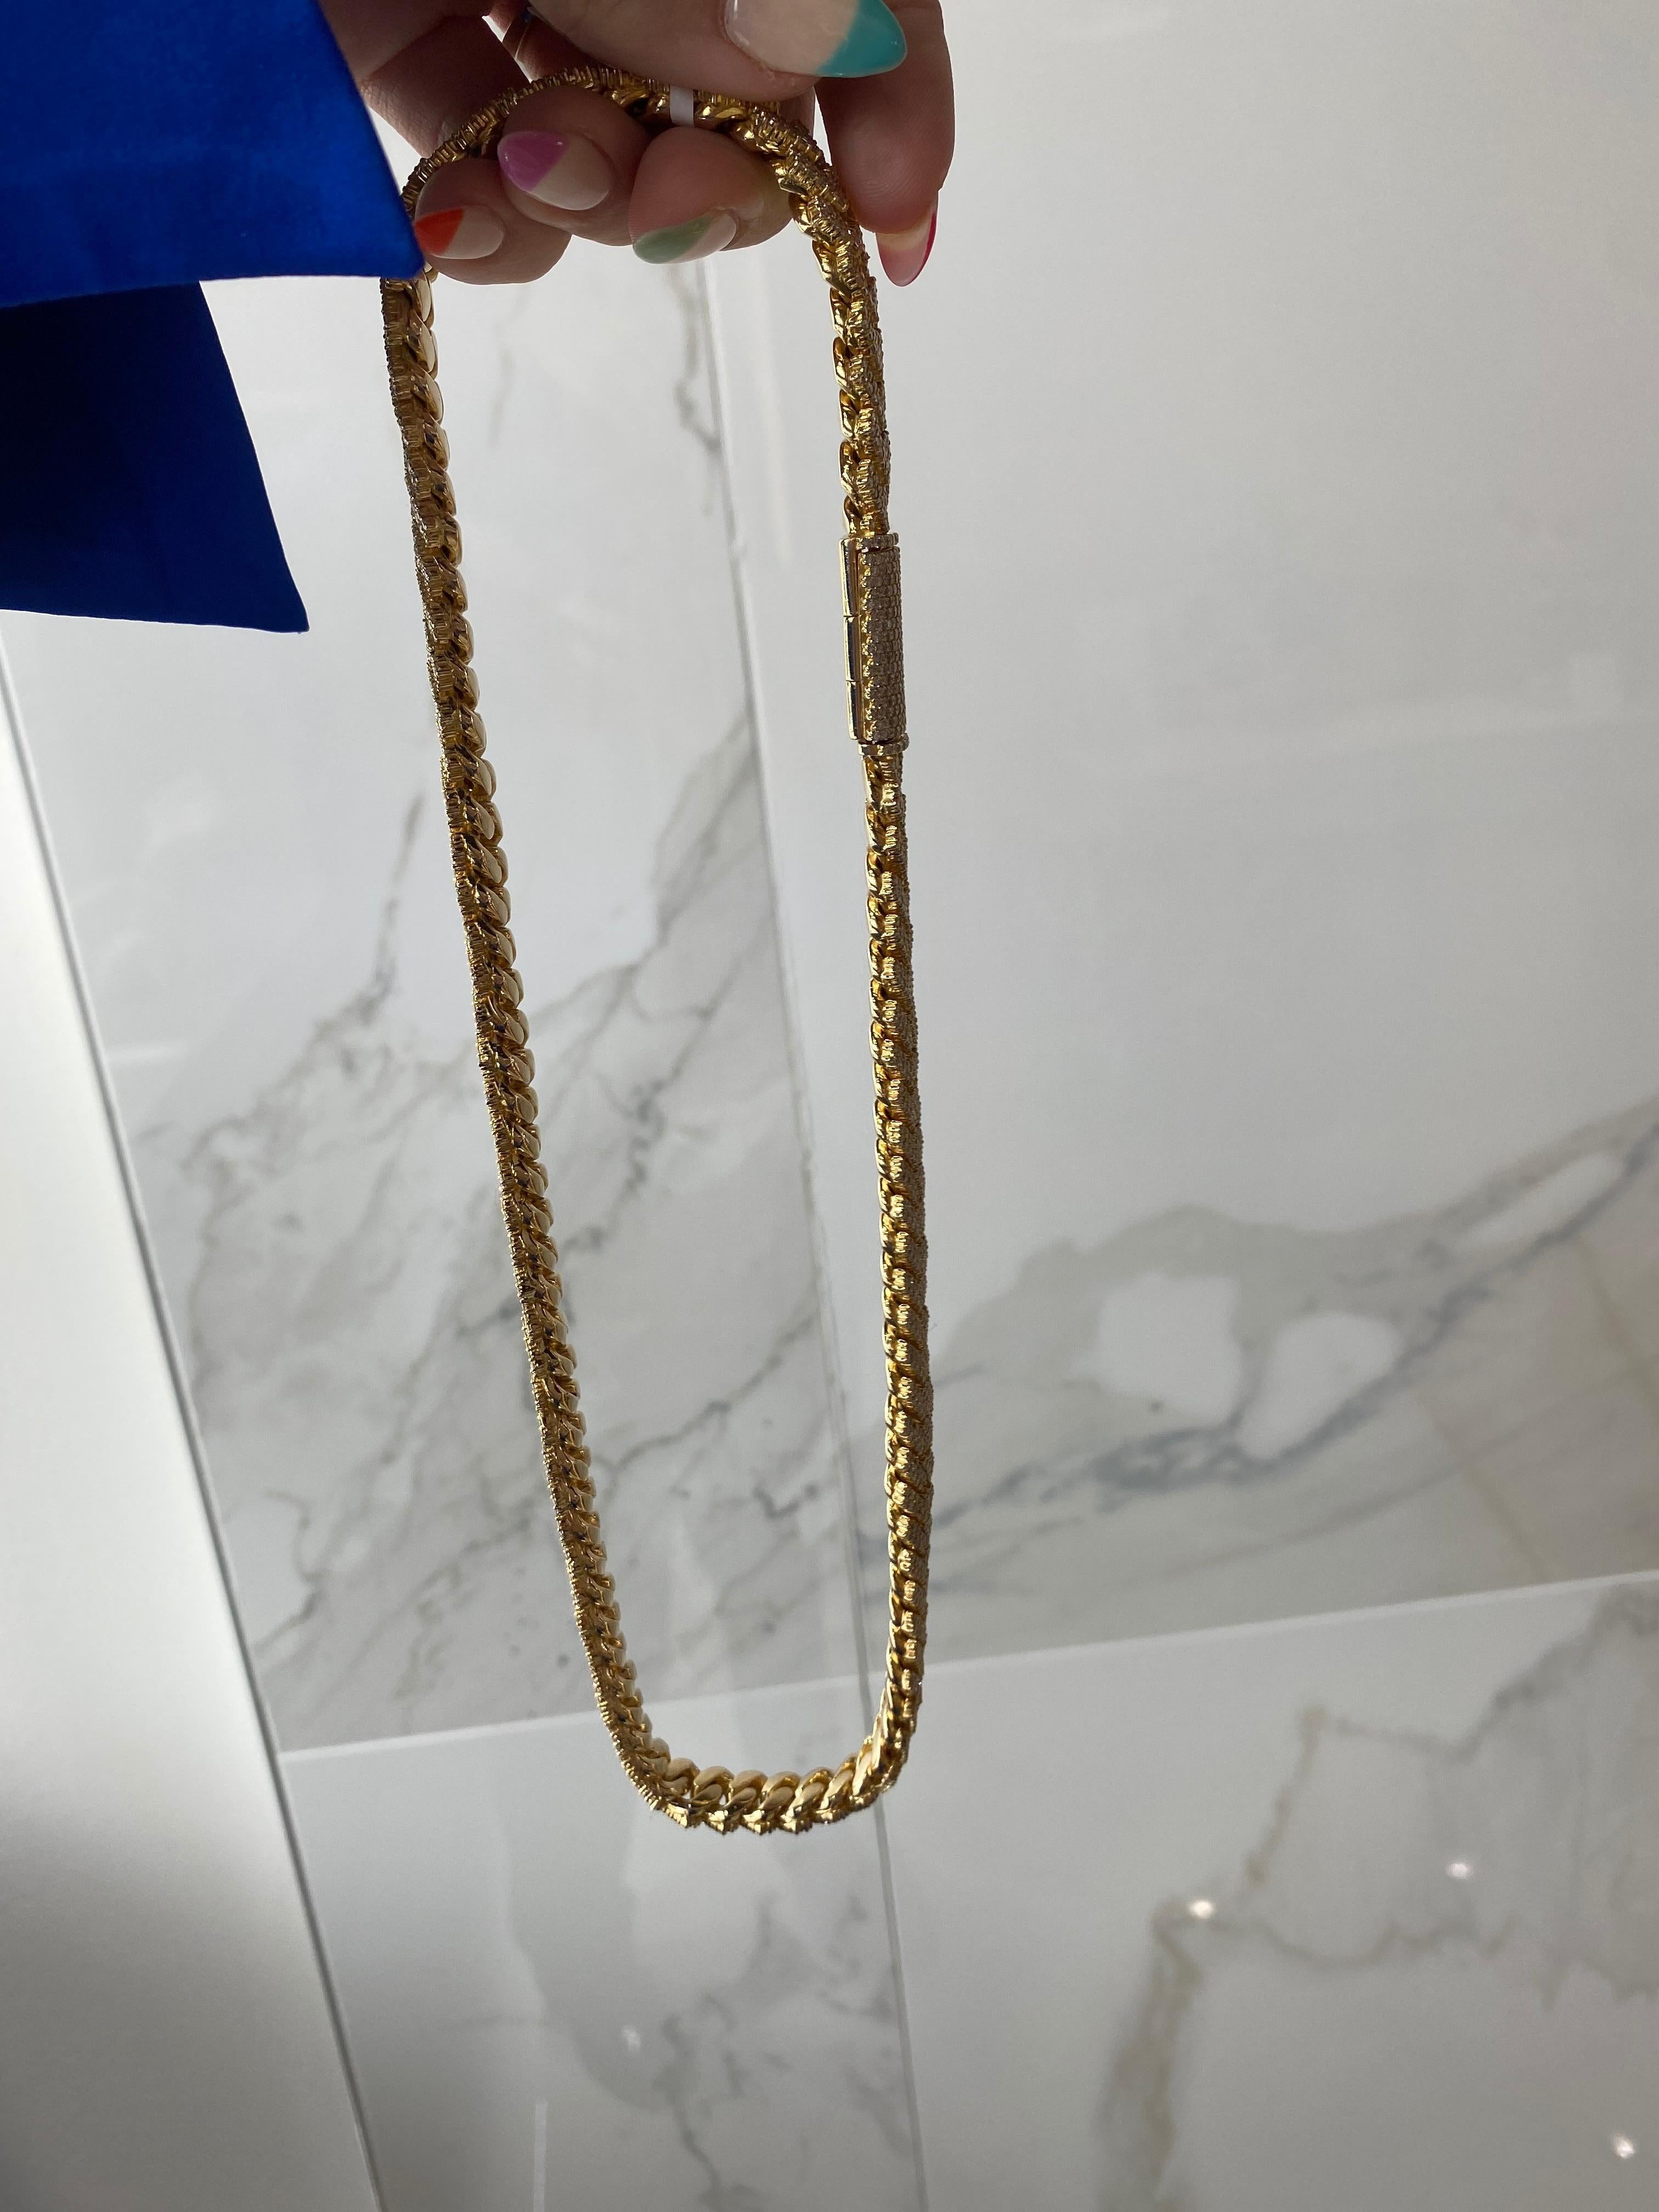 22 inch 14k gold cuban link chain